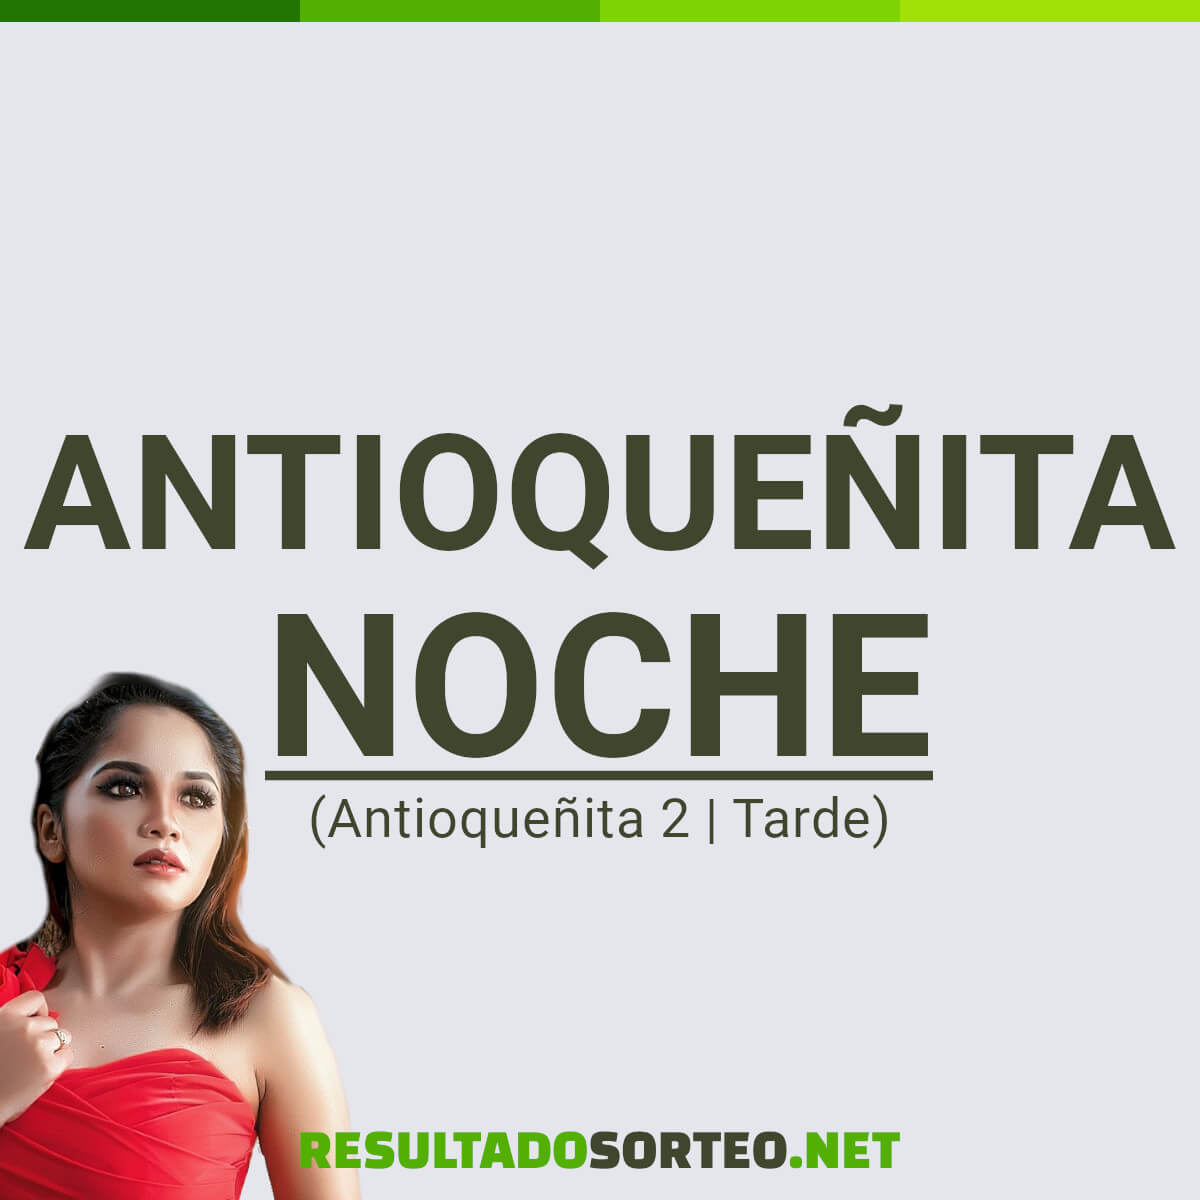 Antioqueñita 2